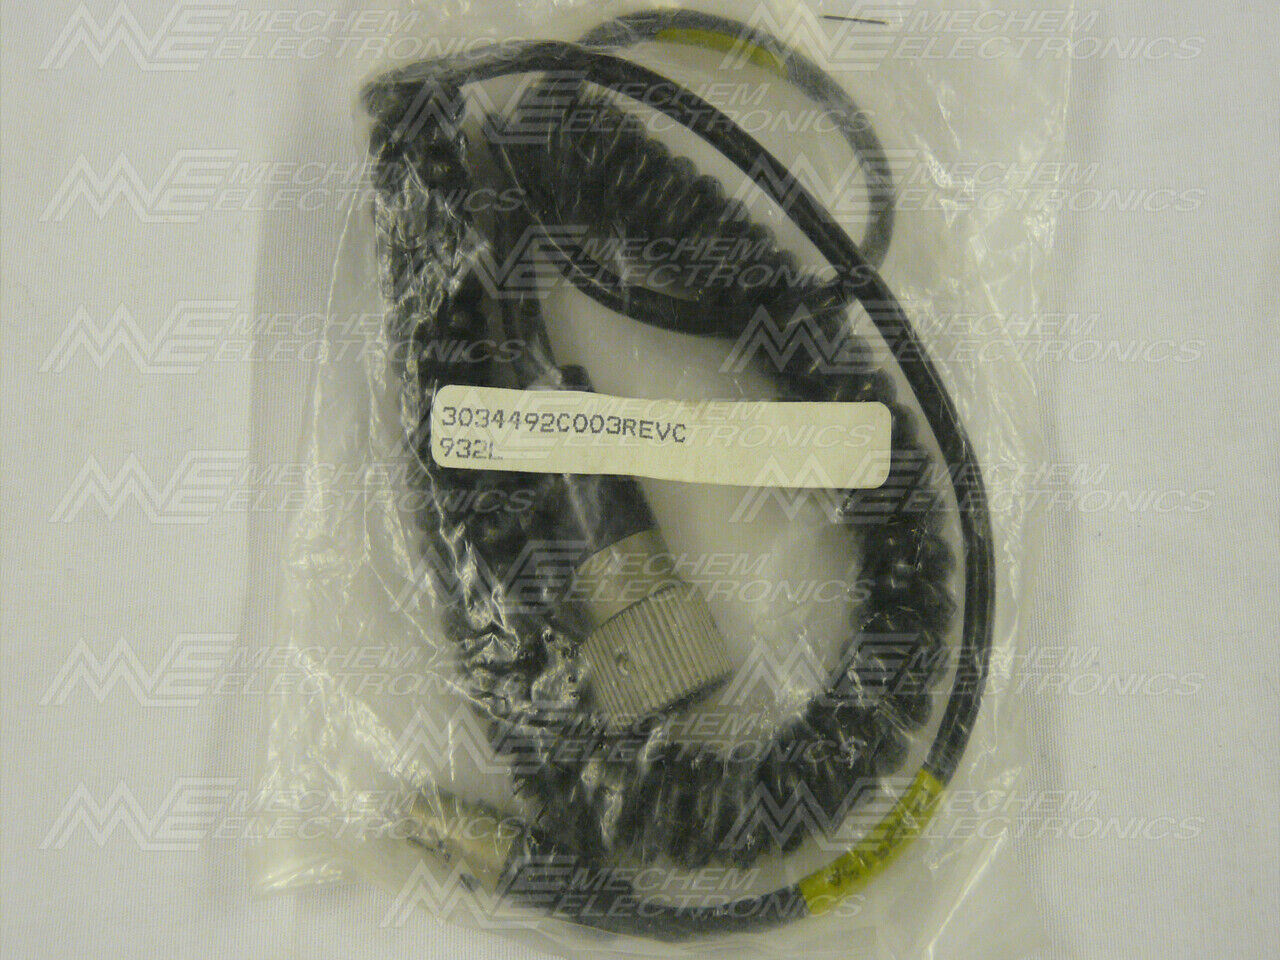 Motorola Tkn8515a Sib Key Fill Cable